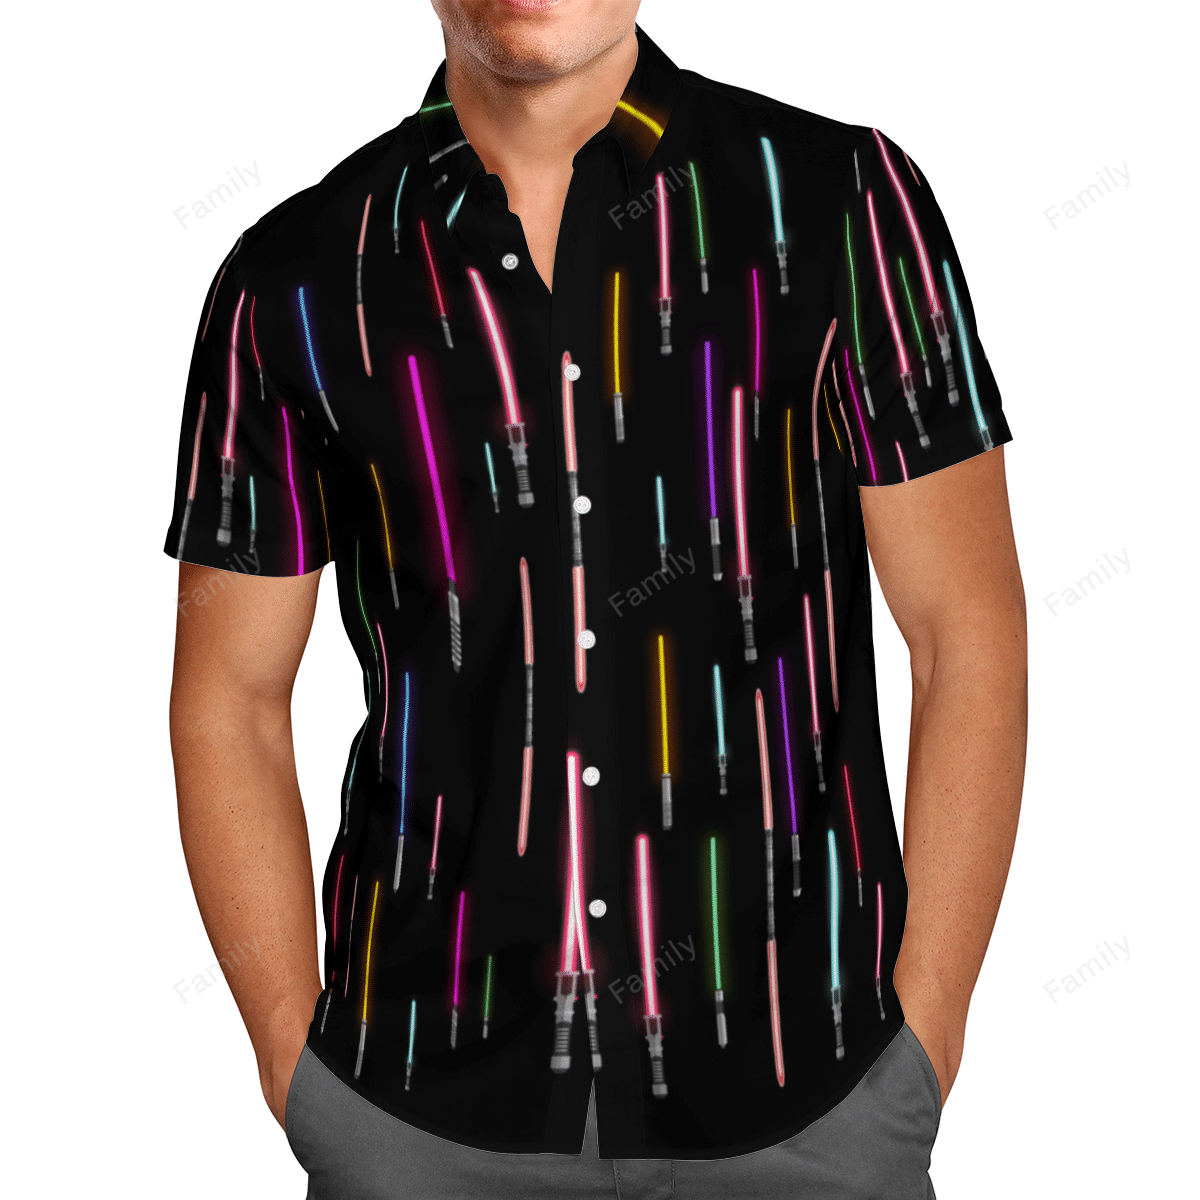 Lightsaber Starwars AOP Hawaii Shirt Black